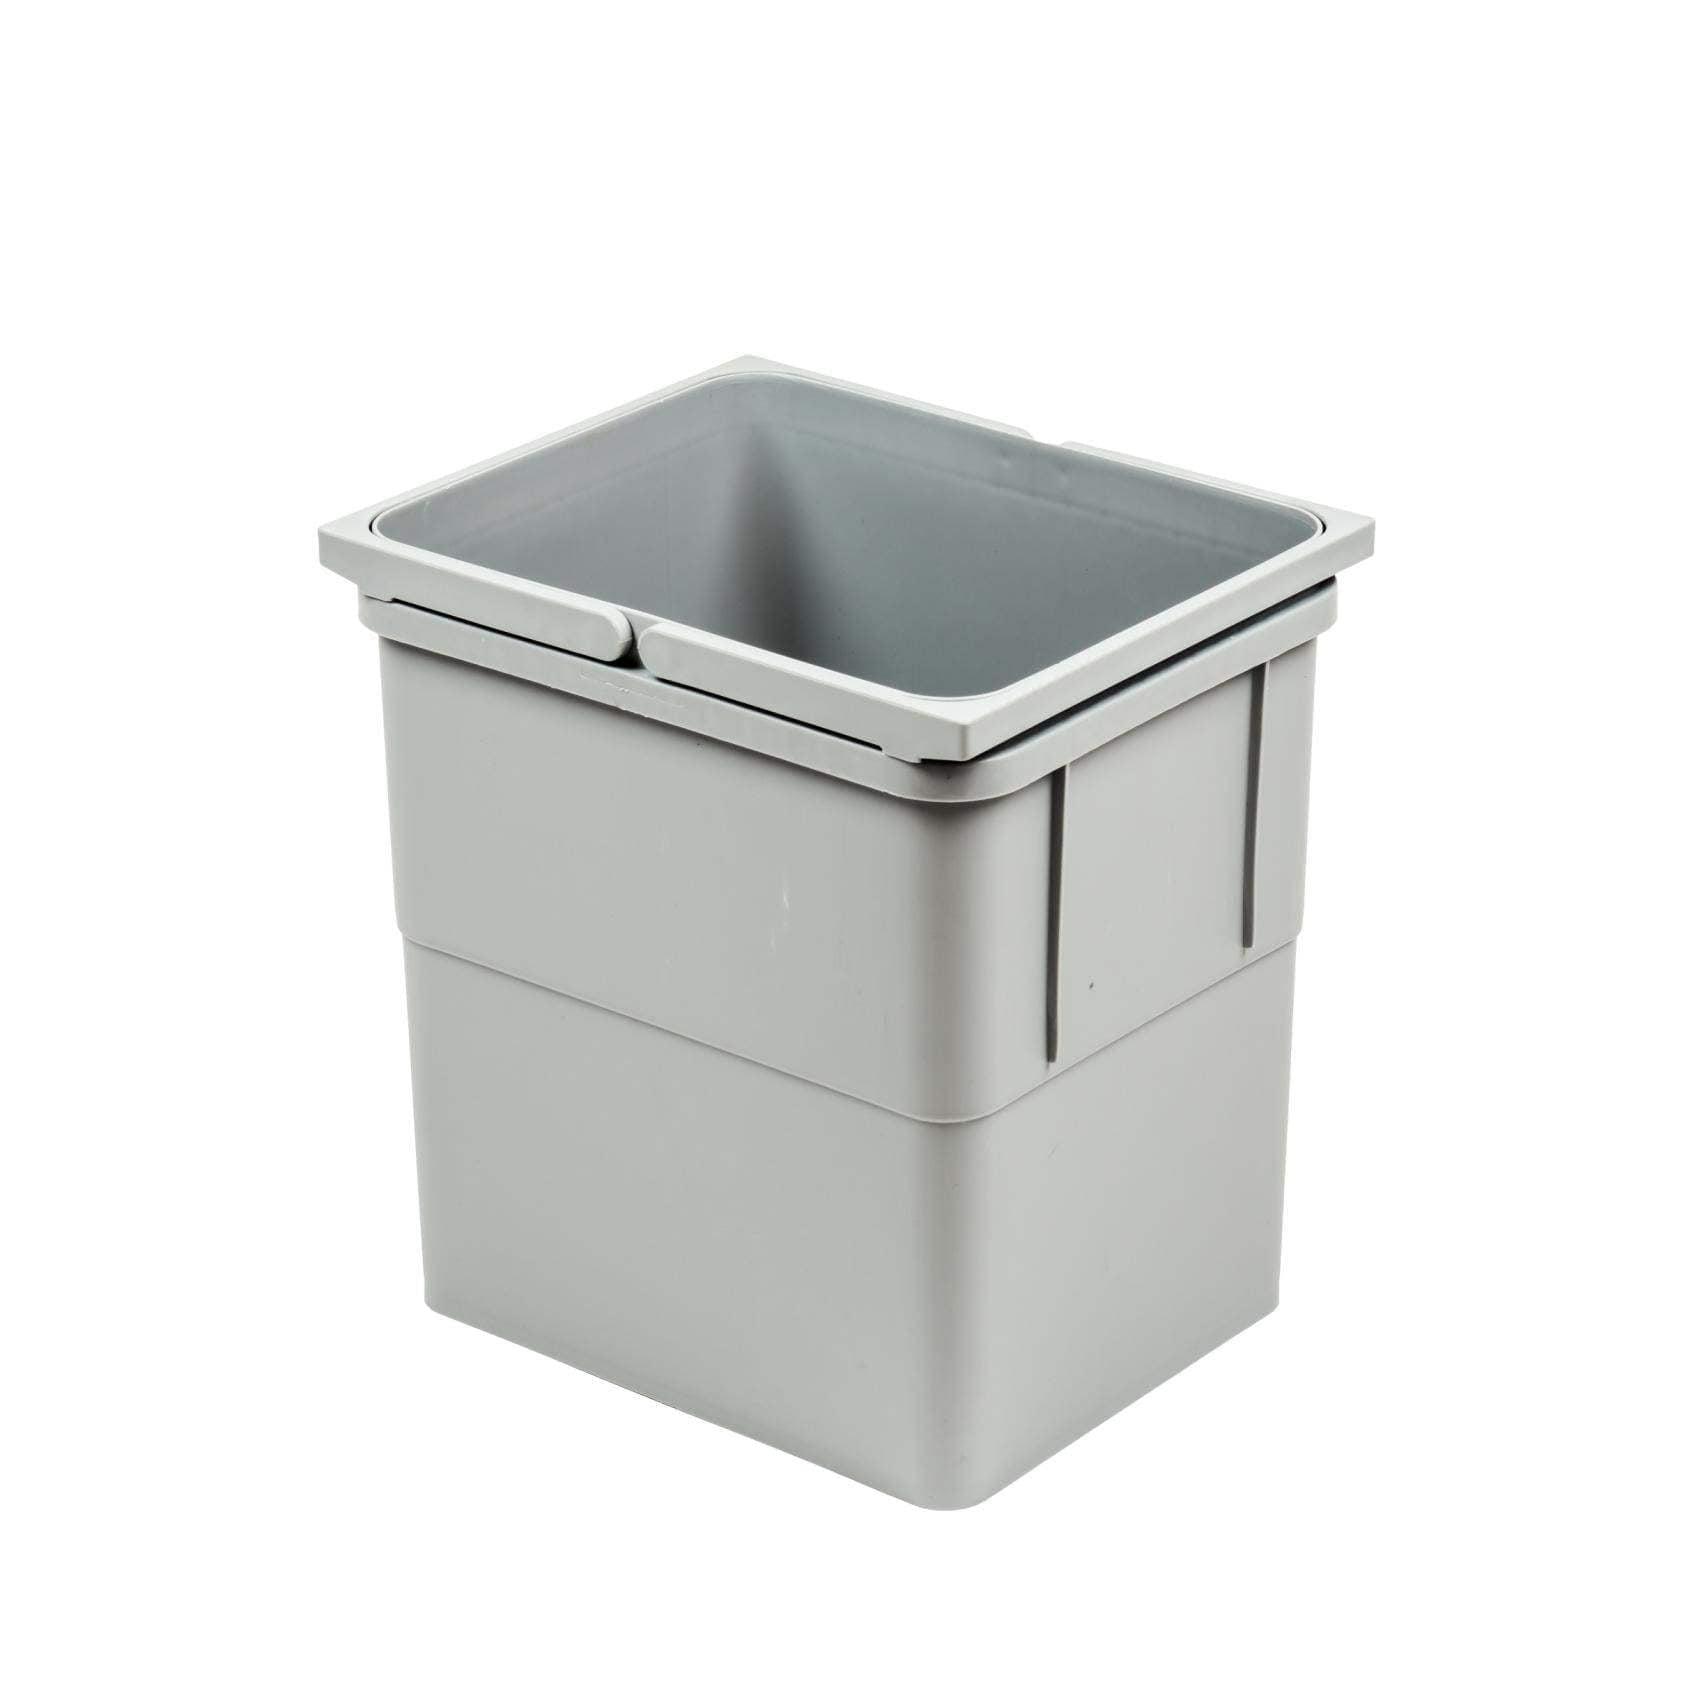 Affaldsspand på 17 liter kapacitet i grå plast Theofils TF-601593 FINICC